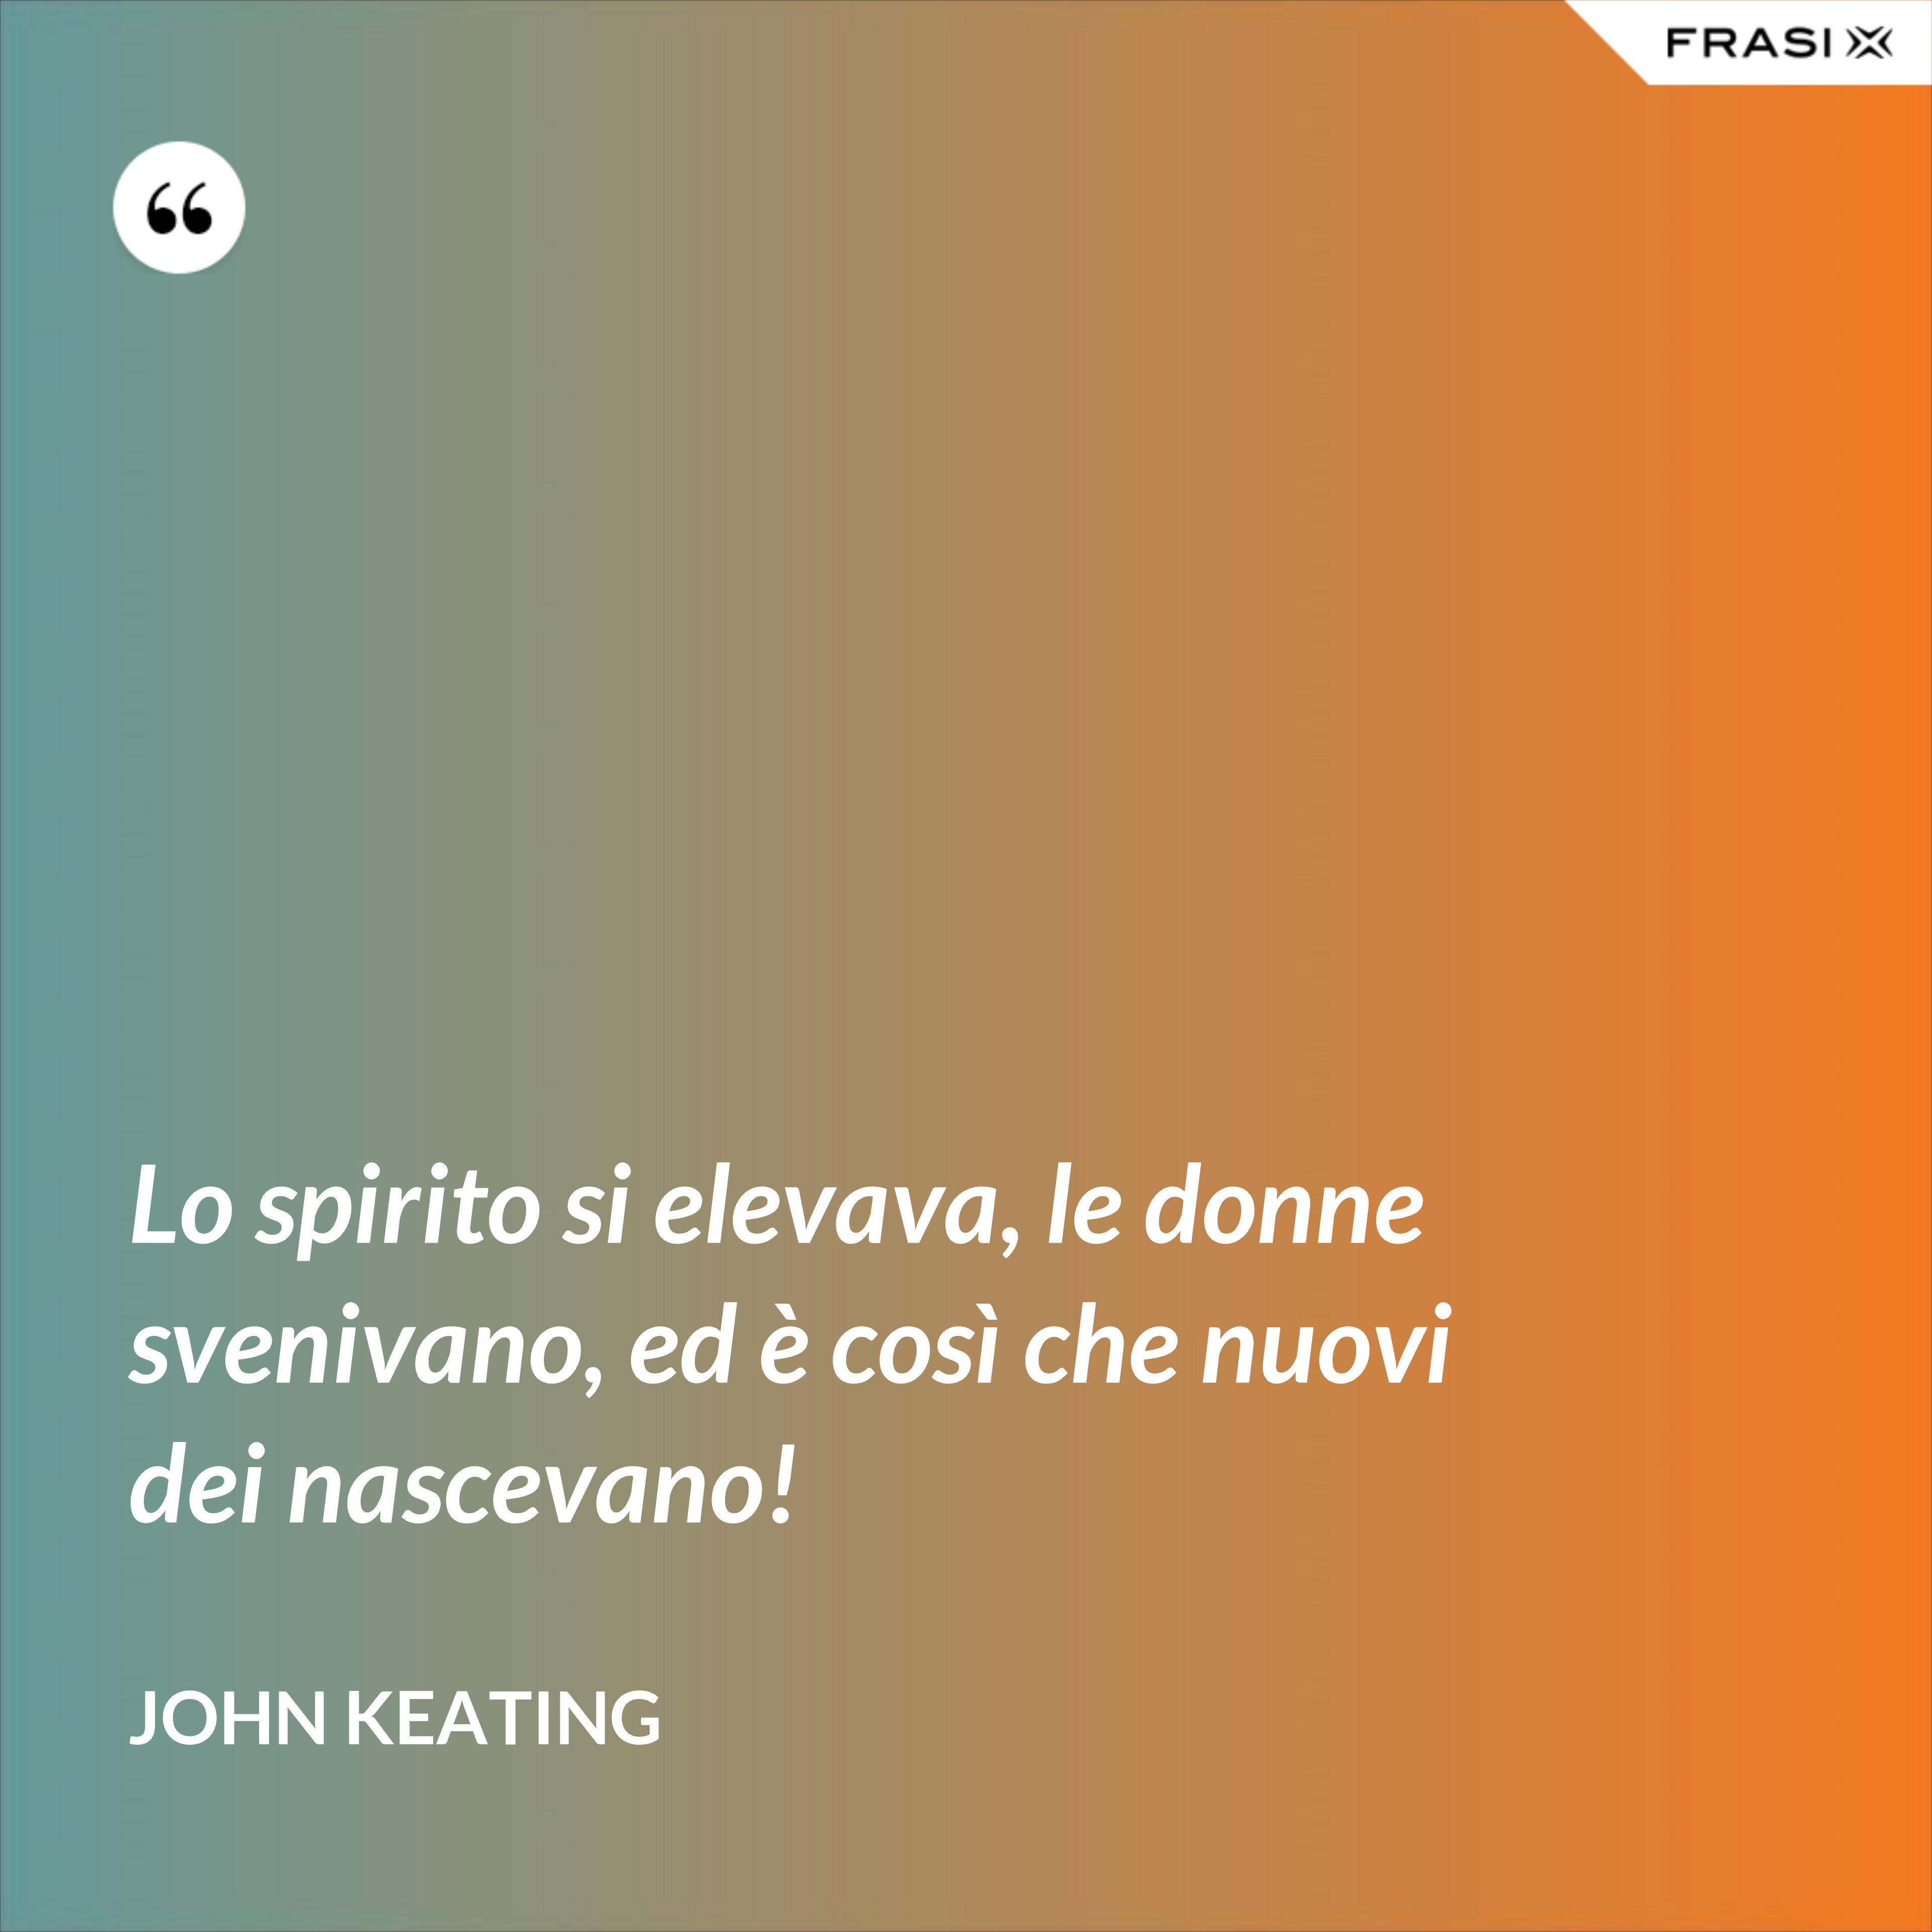 Lo spirito si elevava, le donne svenivano, ed è così che nuovi dei nascevano! - John Keating